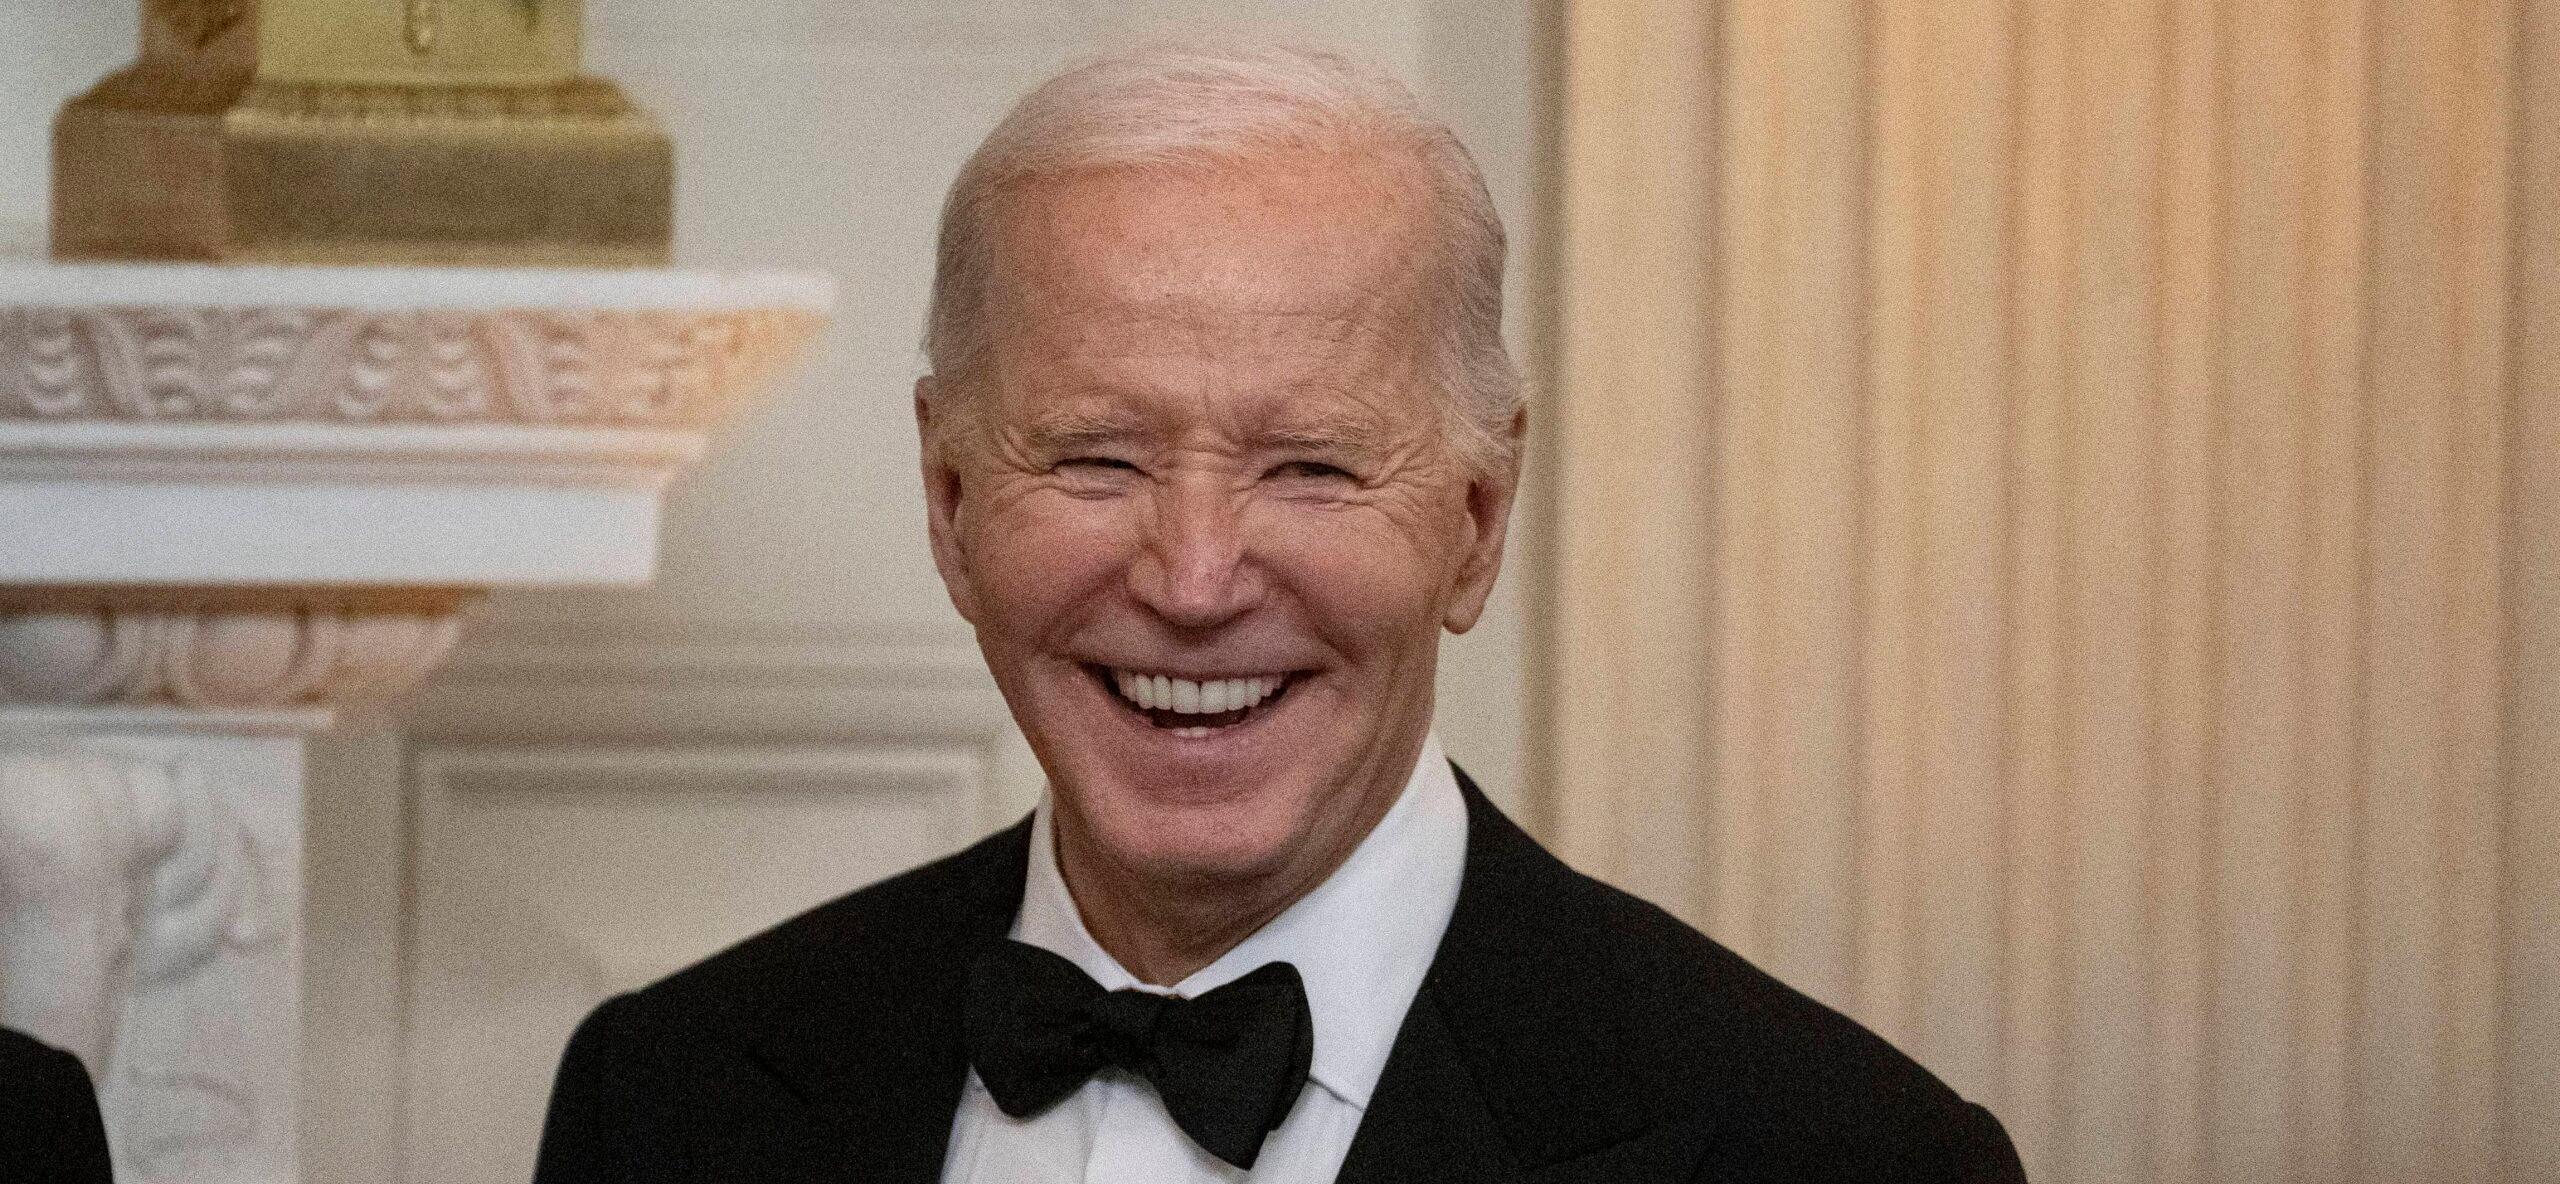 Joe Biden Announces He Is Getting A ‘Physical’ Amid Mental Health Concerns